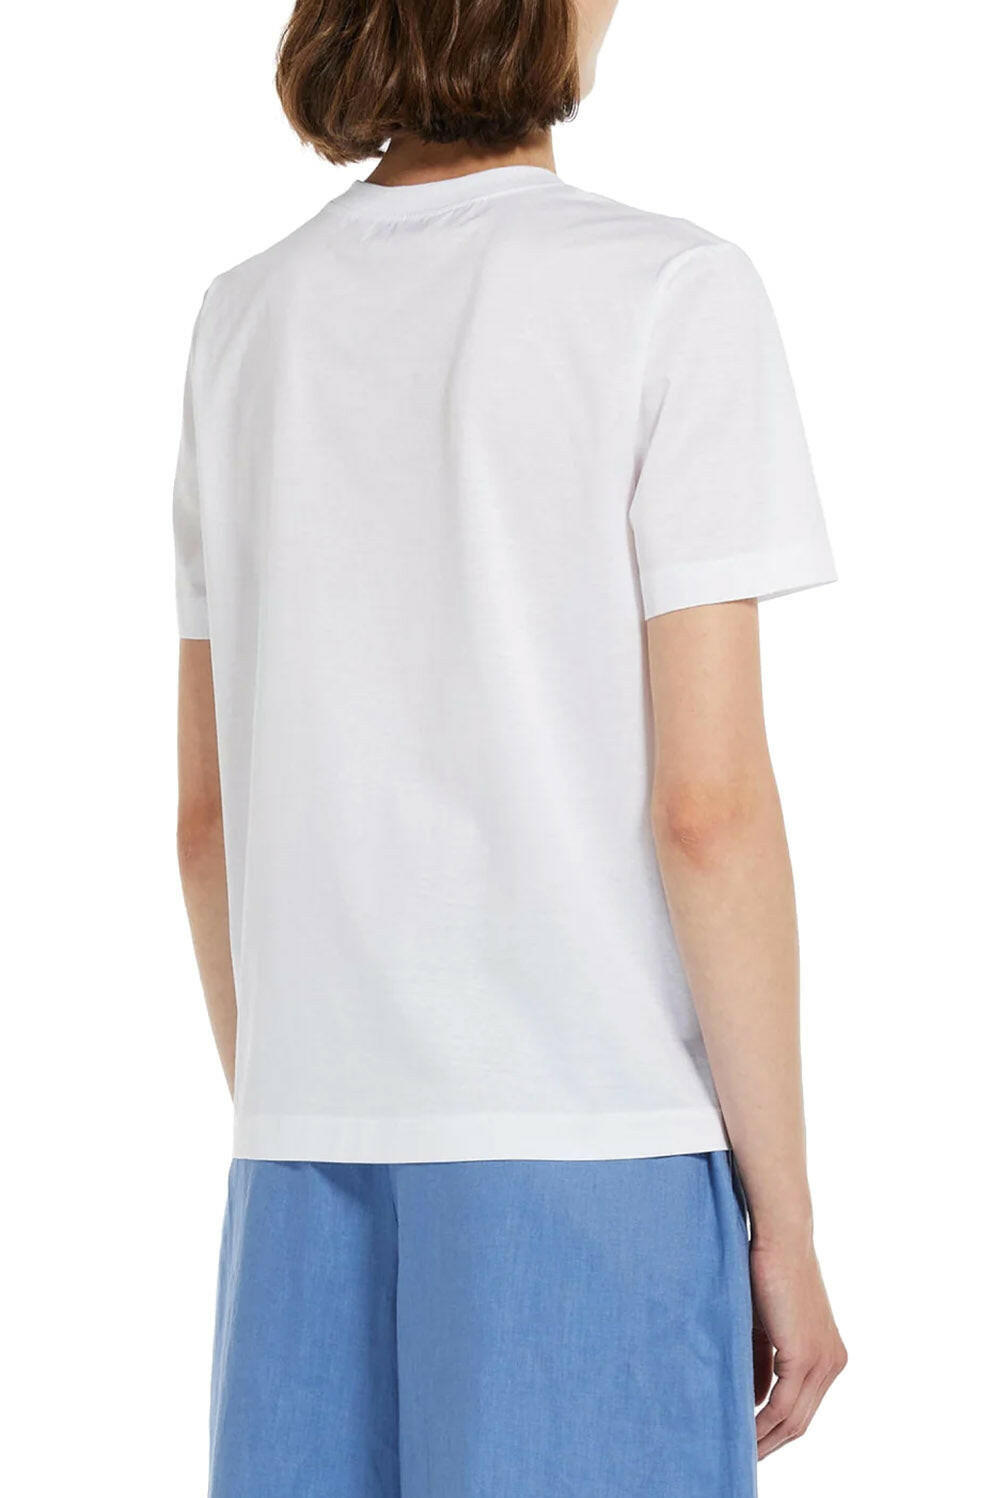  Max Mara Oblique T-shirt Donna - 3